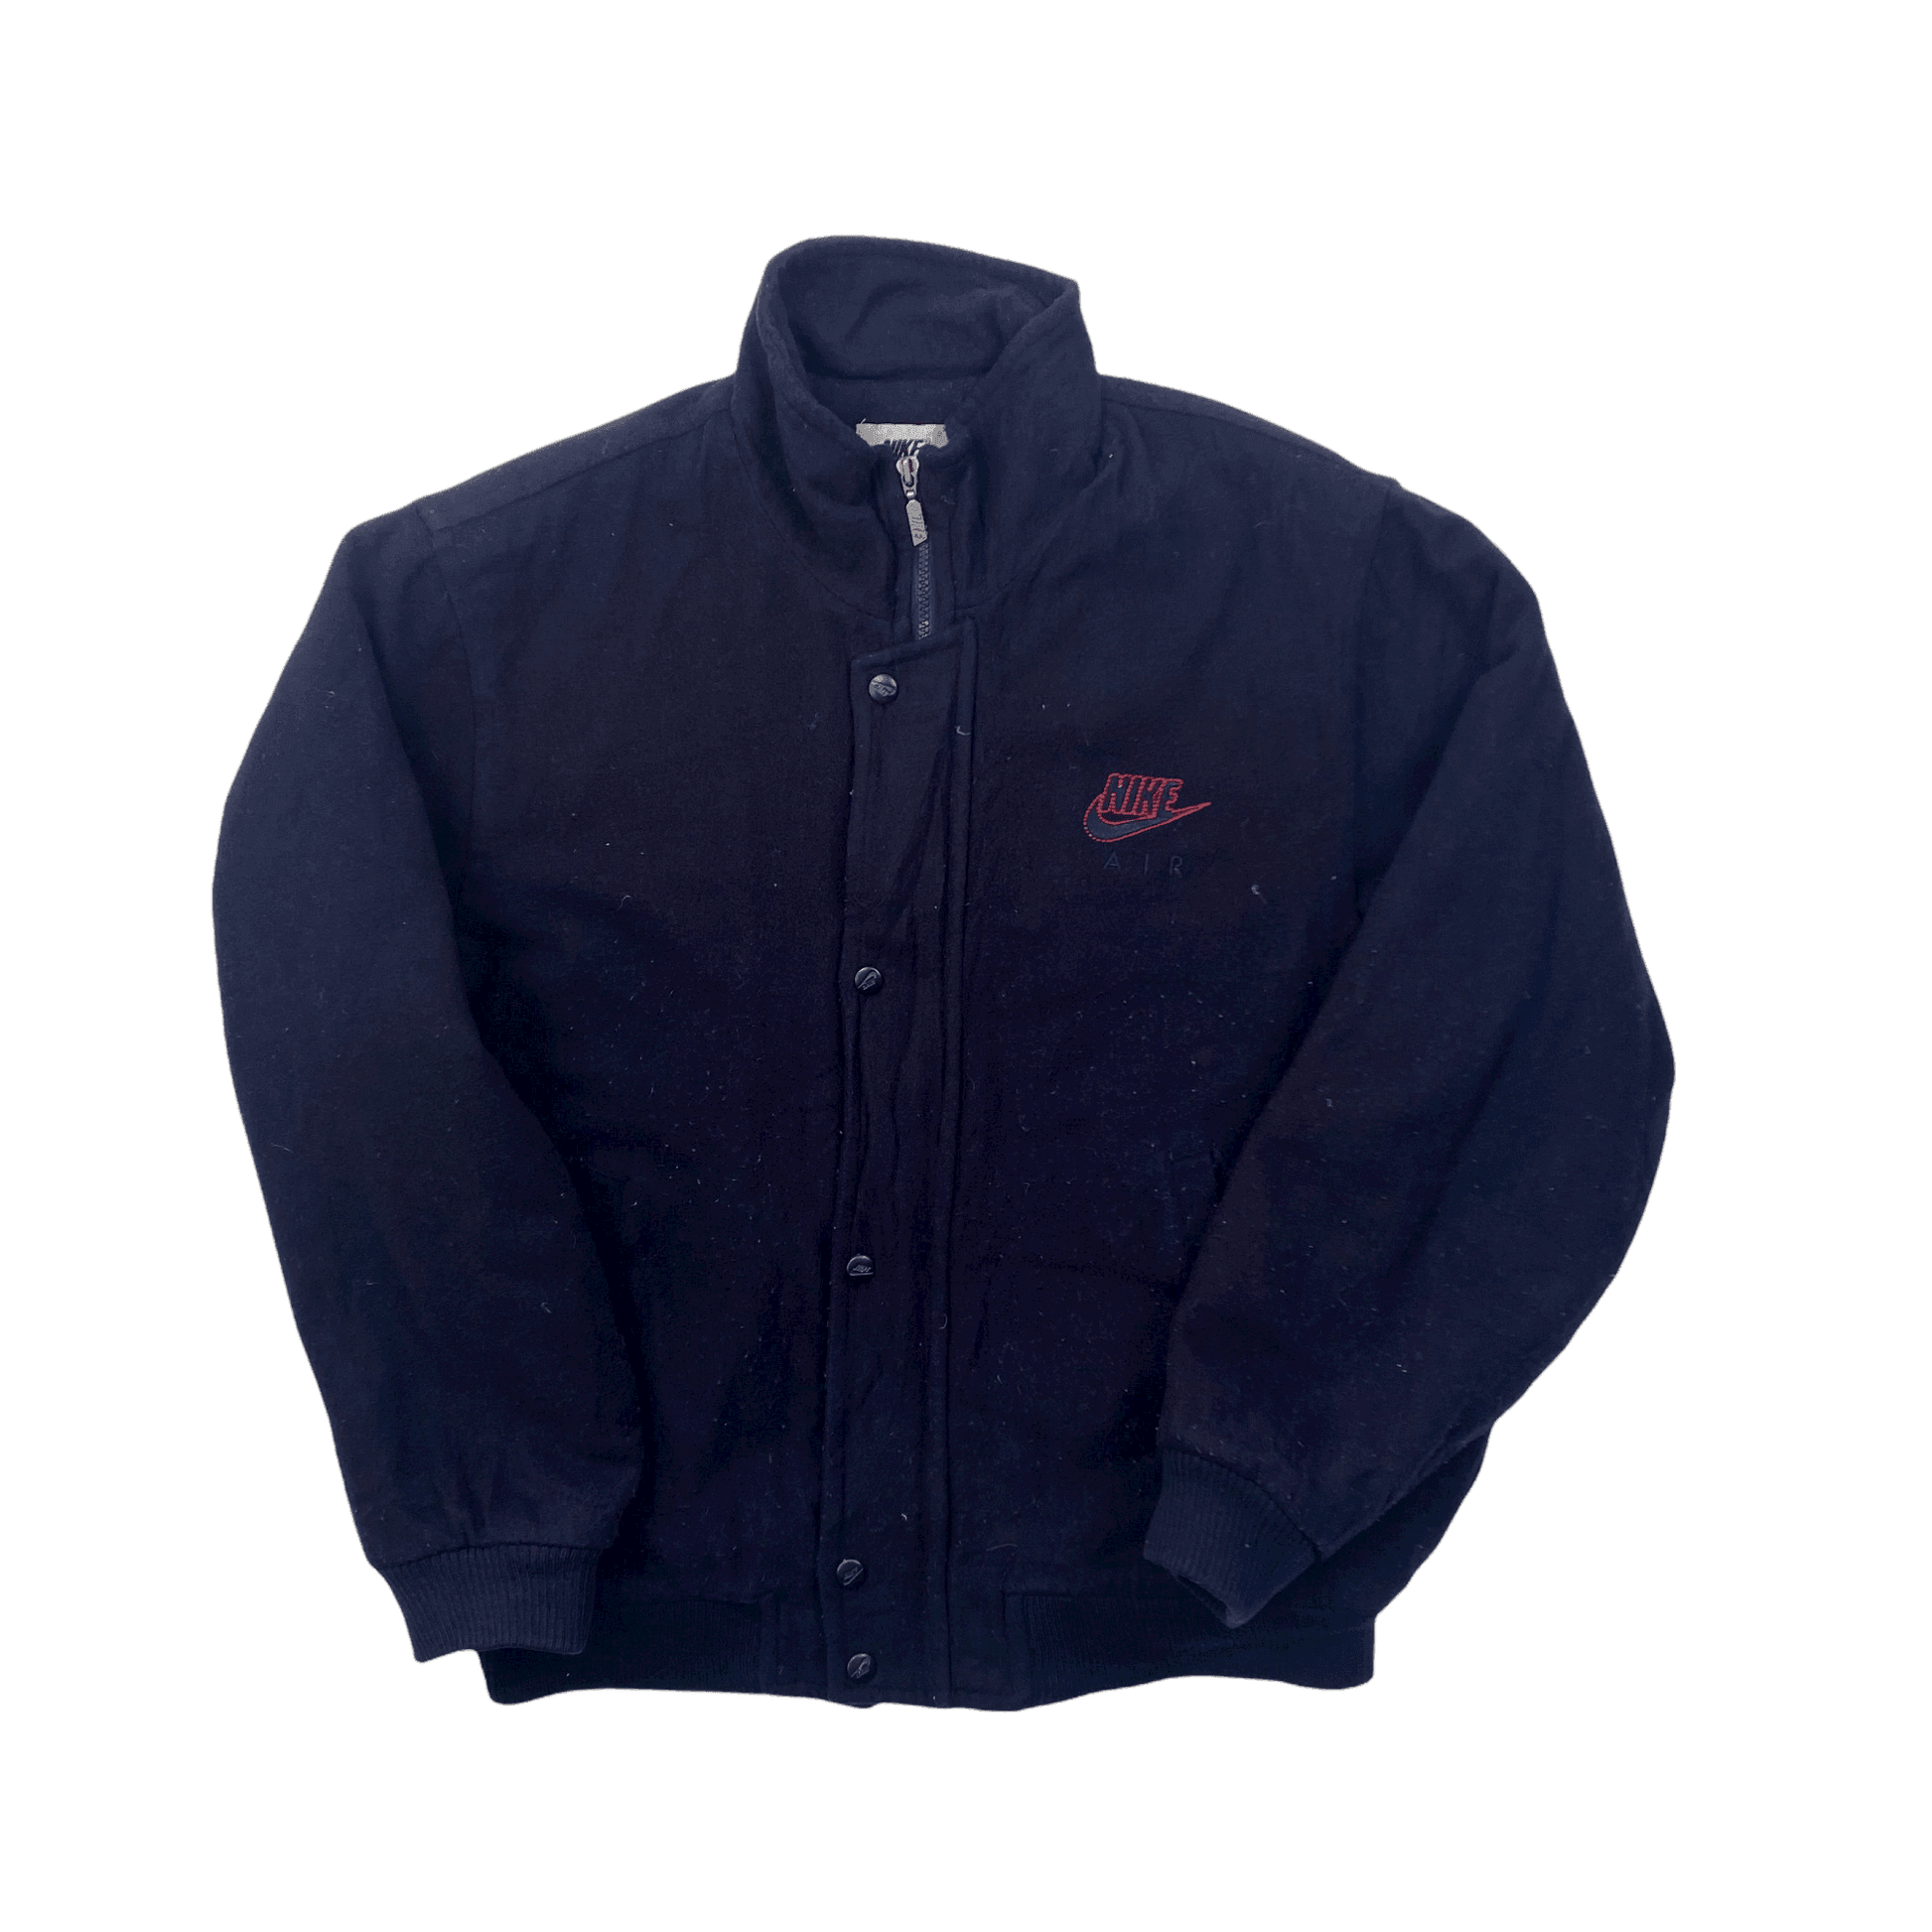 Vintage 90s Navy Blue Nike Air Varsity Jacket - Medium - The Streetwear Studio